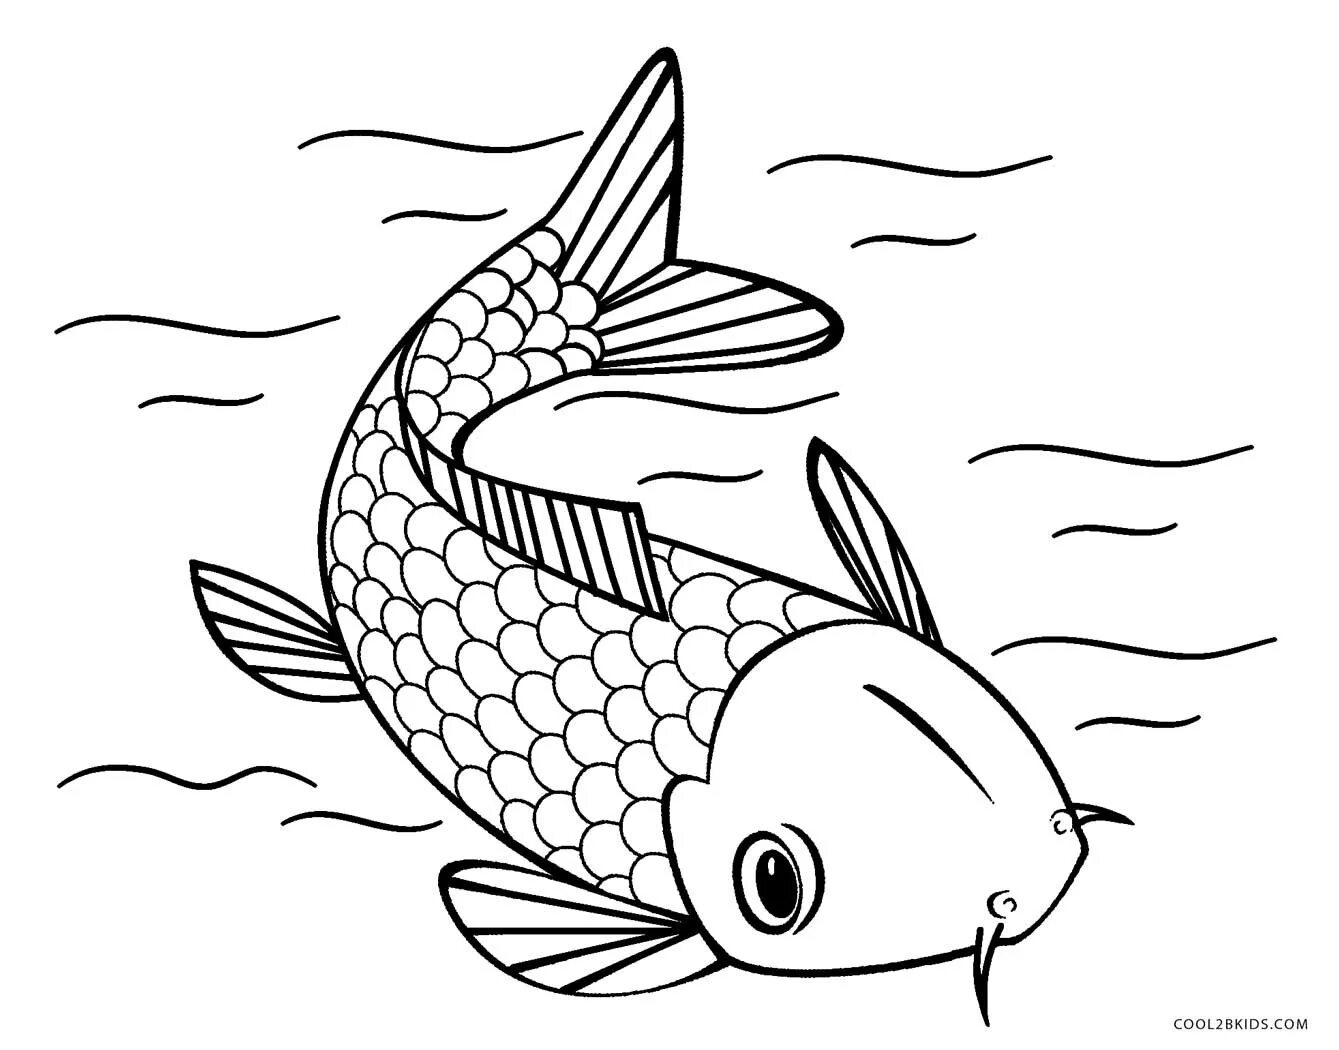 Раскраски рыбки для детей 3 4. Рыбка сомик аквариумный раскраска. Раскраска рыбка. Рыба раскраска для детей. Рыбка для раскрашивания для детей.